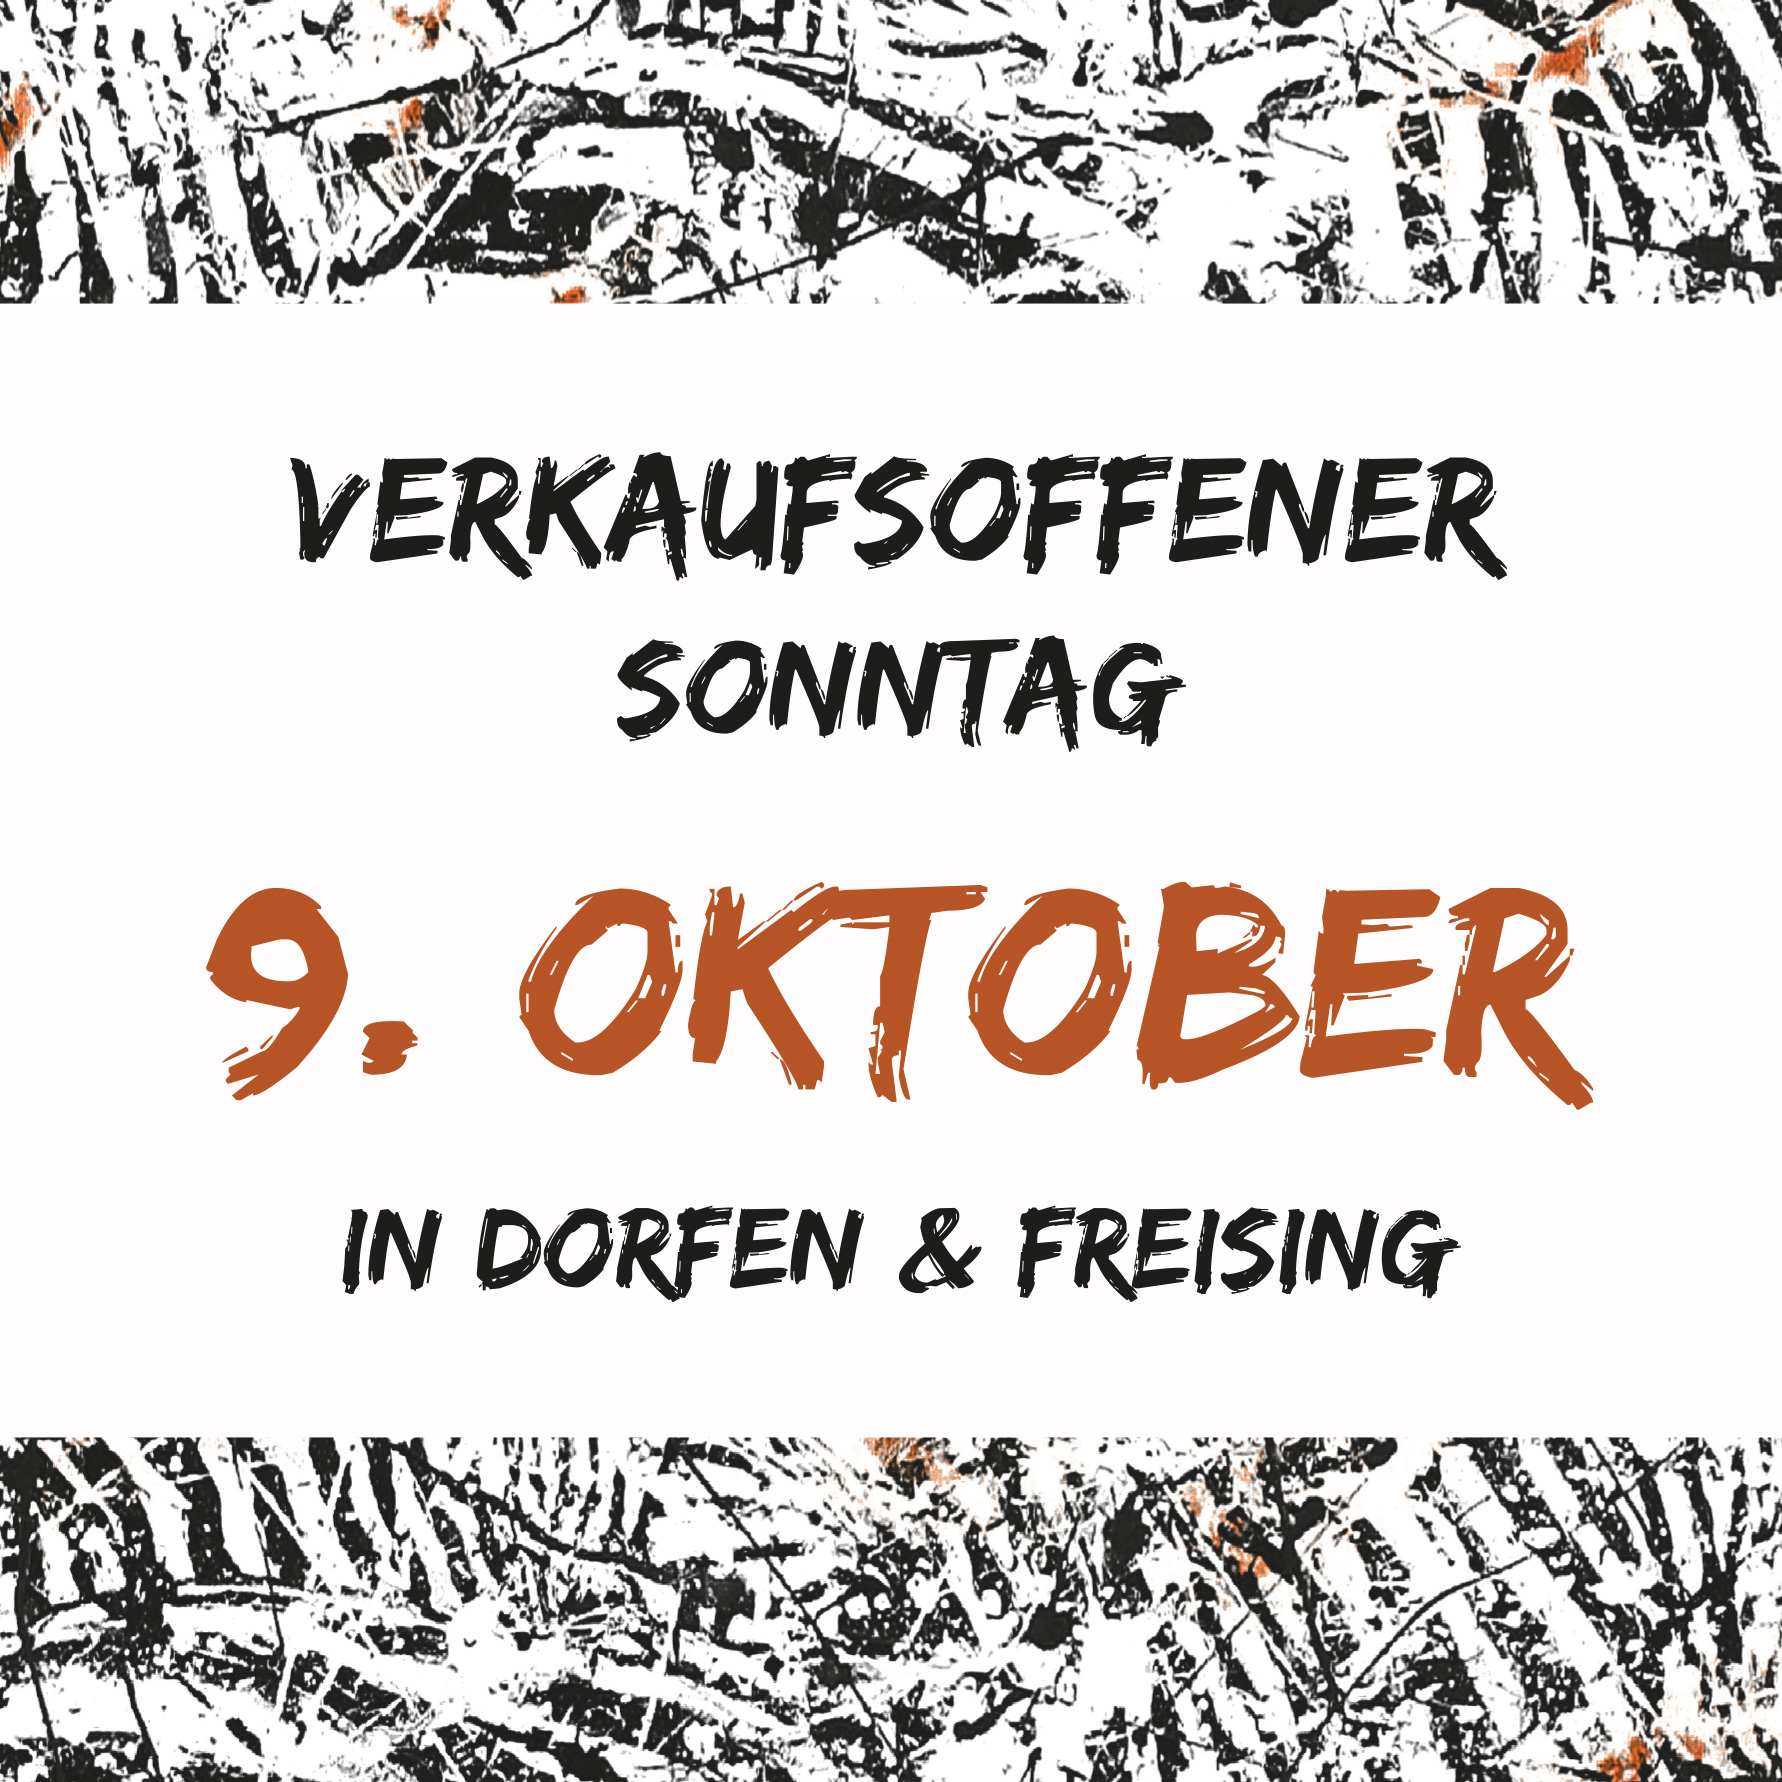 Verkaufsoffener Sonntag in Dorfen und Freising am 9. Oktober